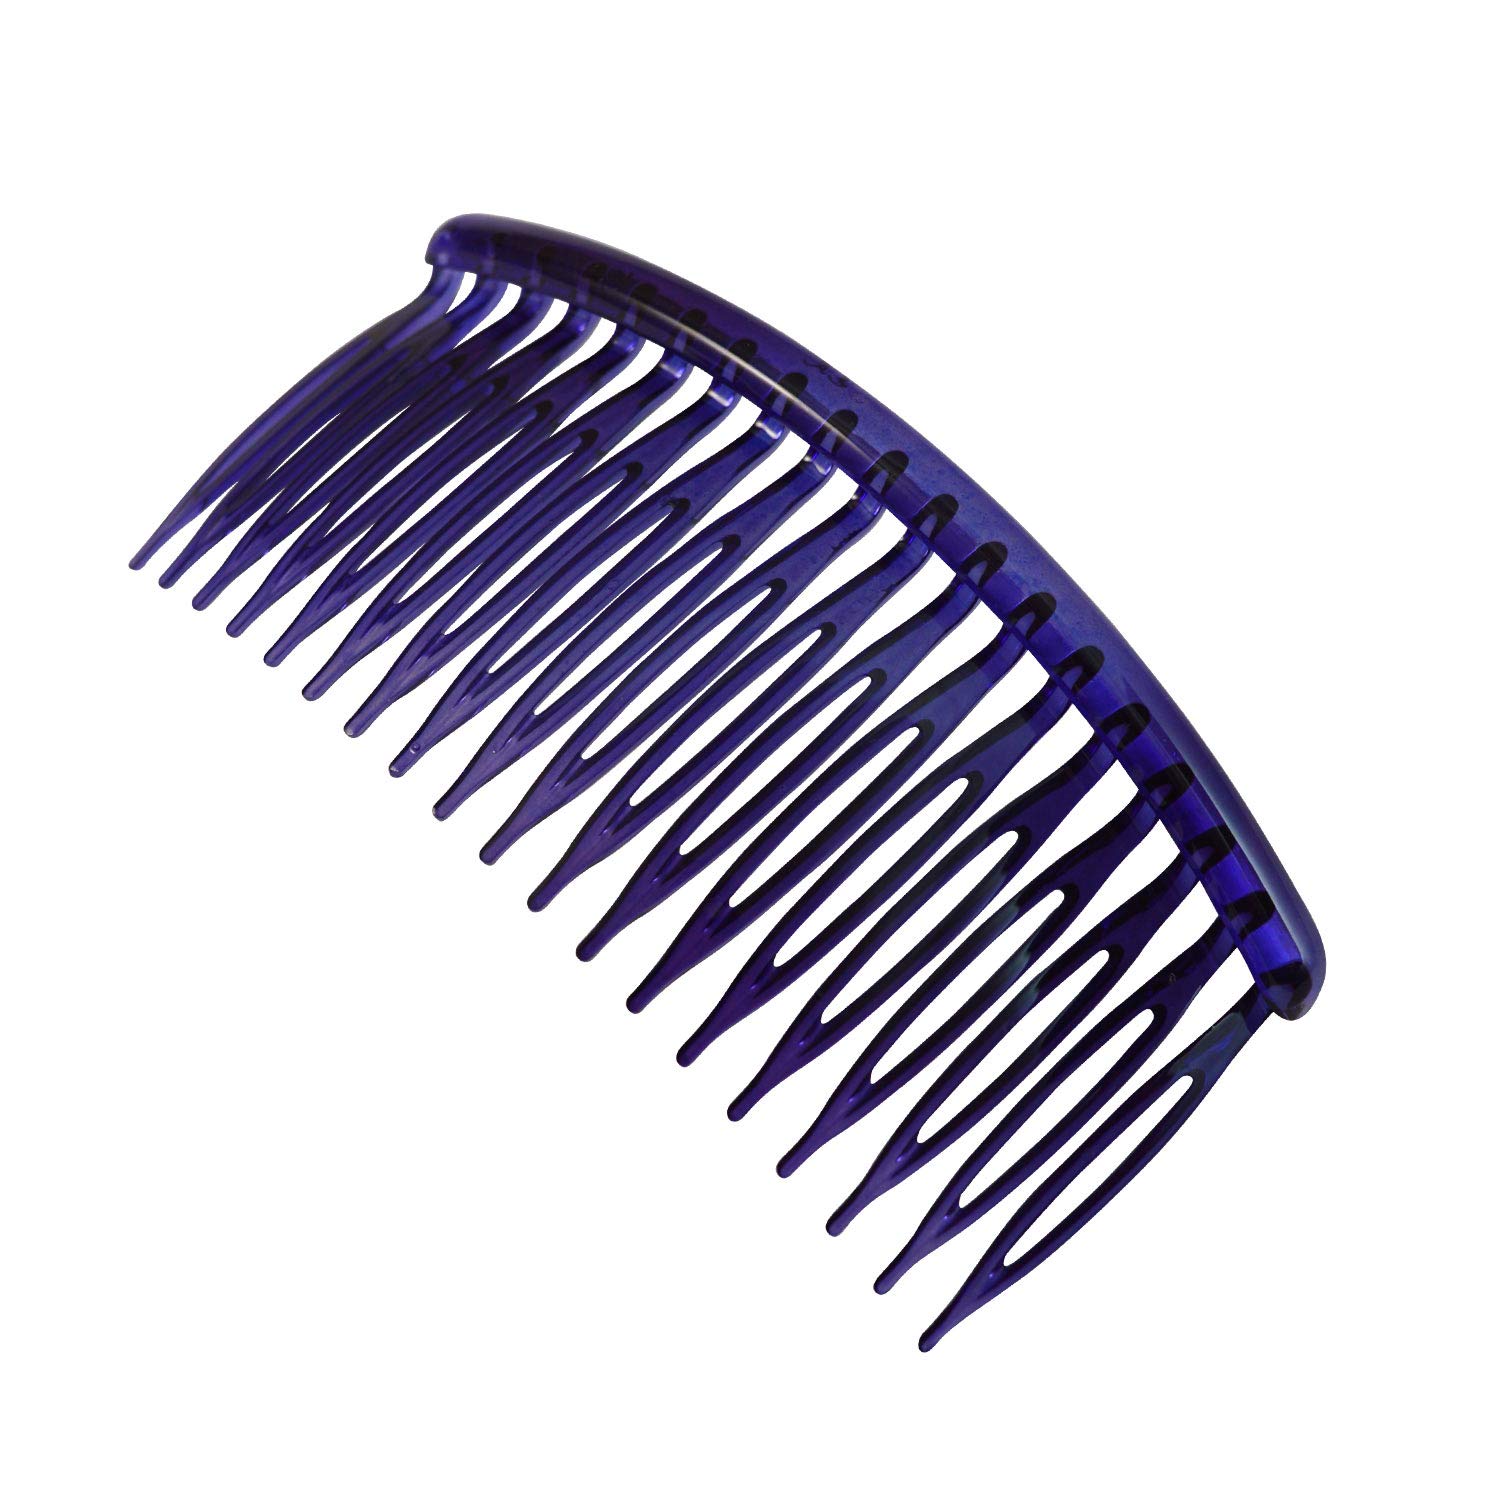 Comb Clip